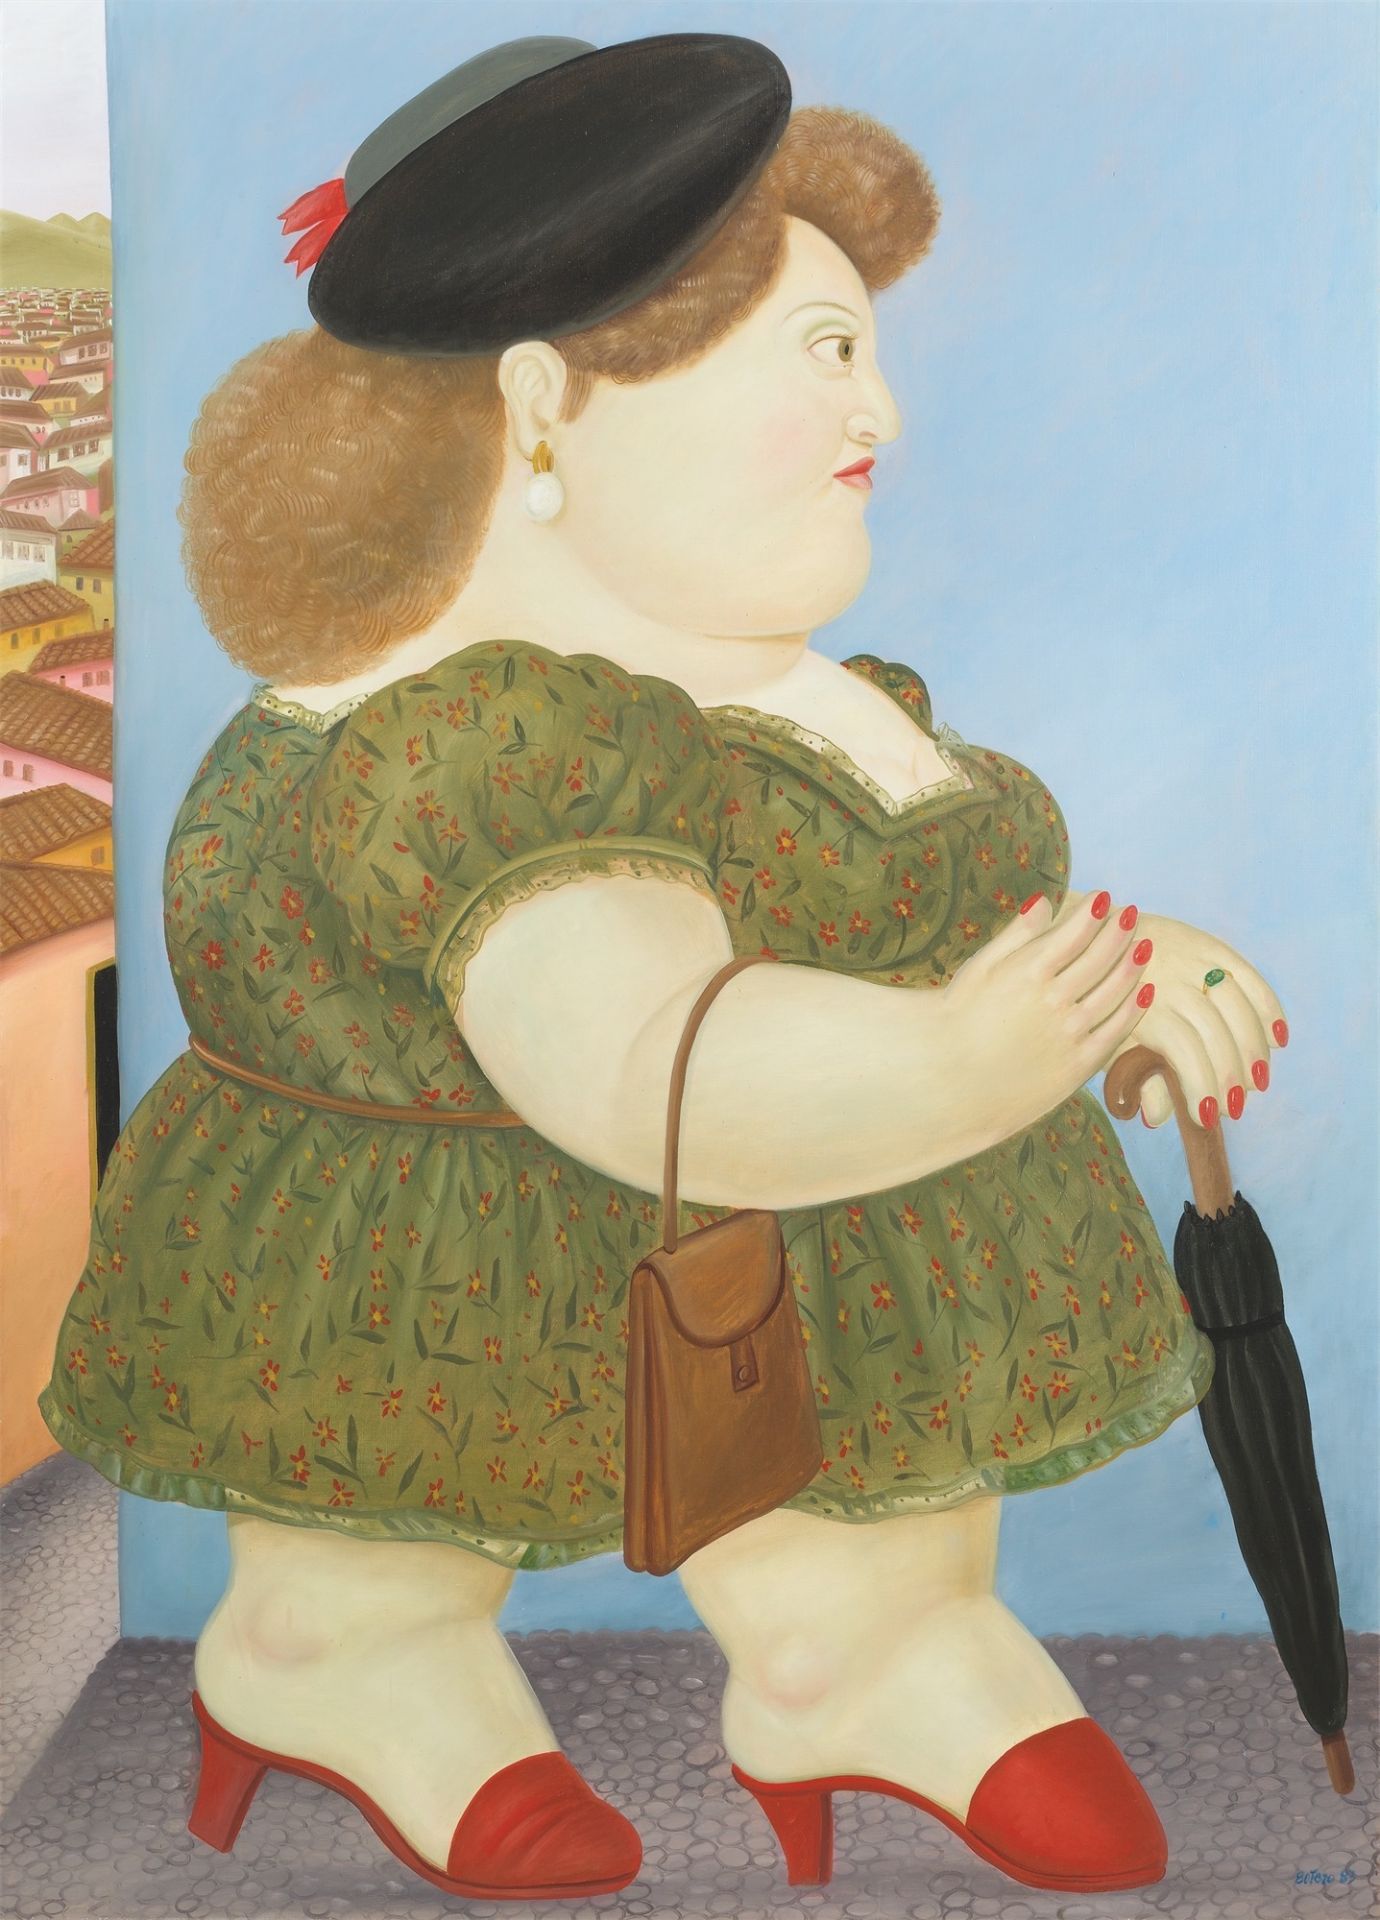 Fernando Botero. „Walking Woman in Profile“. 1983